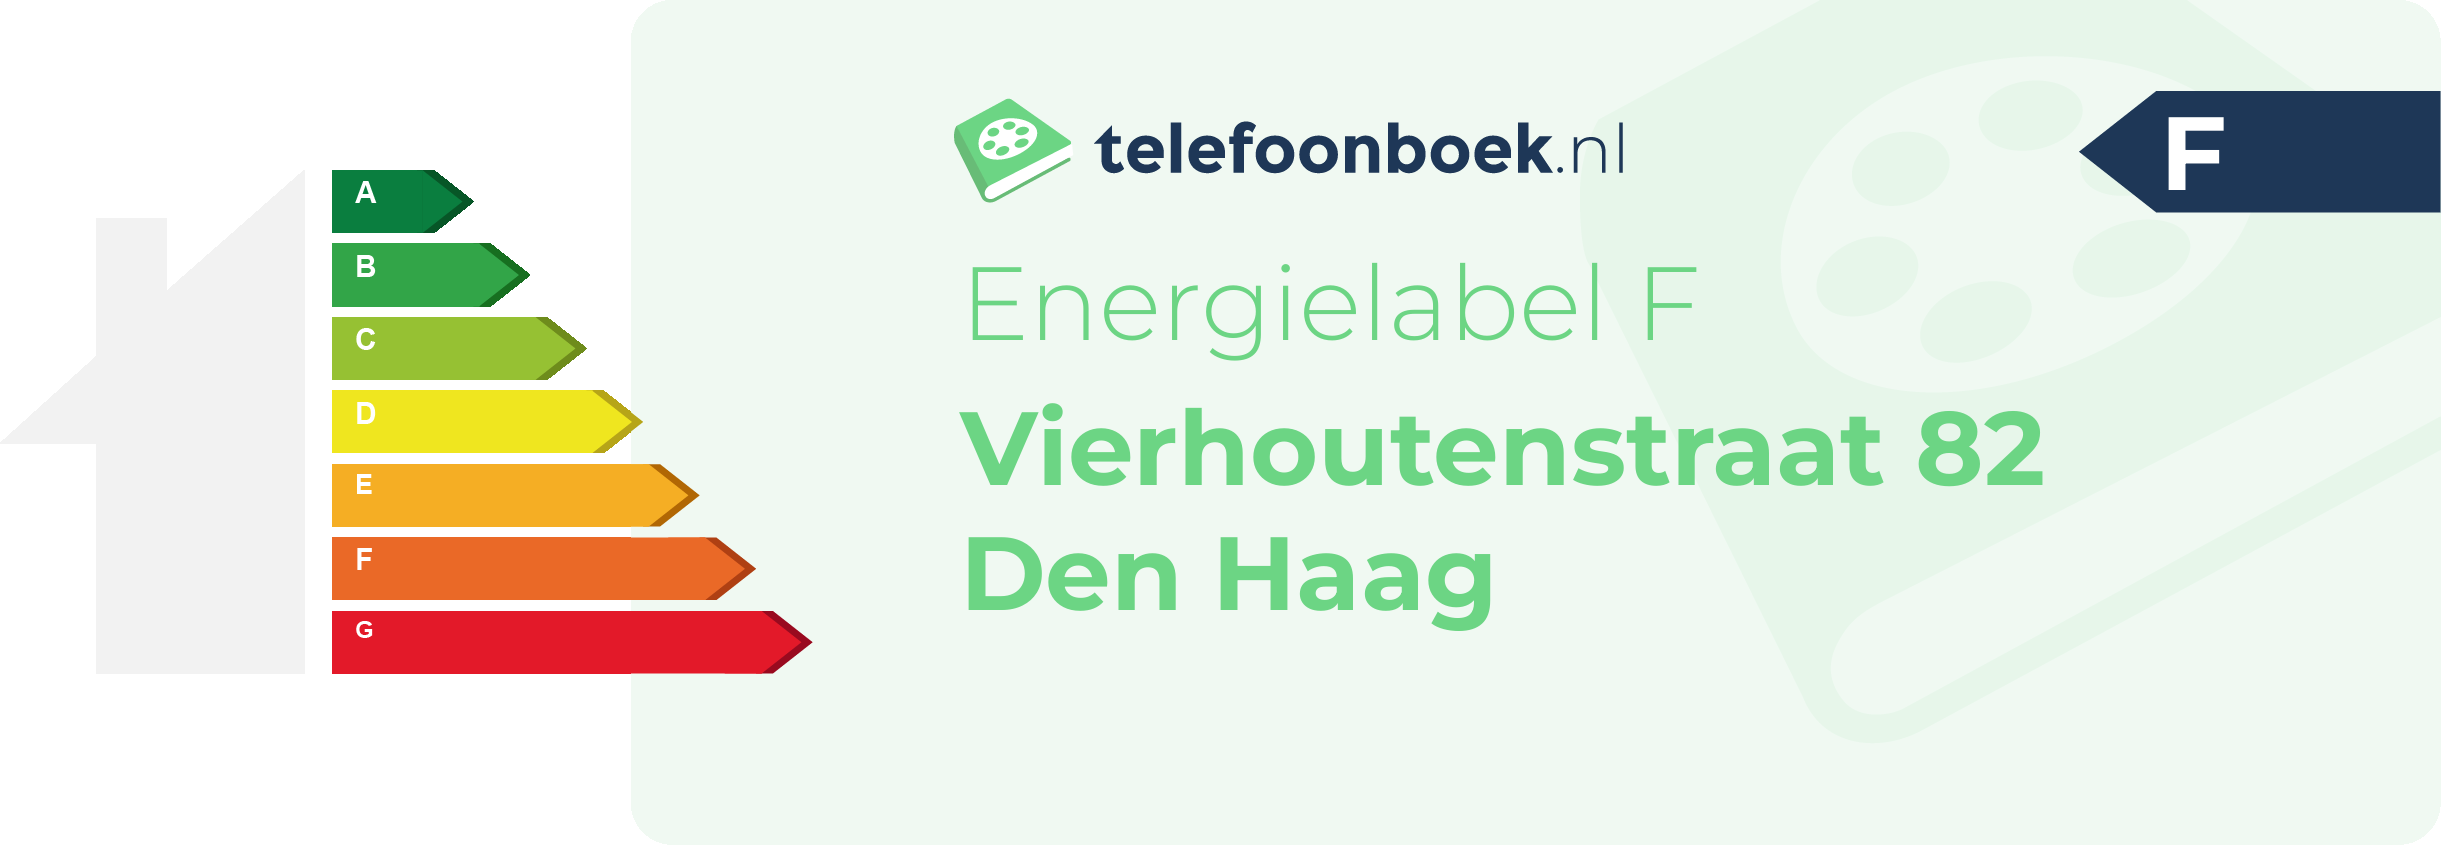 Energielabel Vierhoutenstraat 82 Den Haag